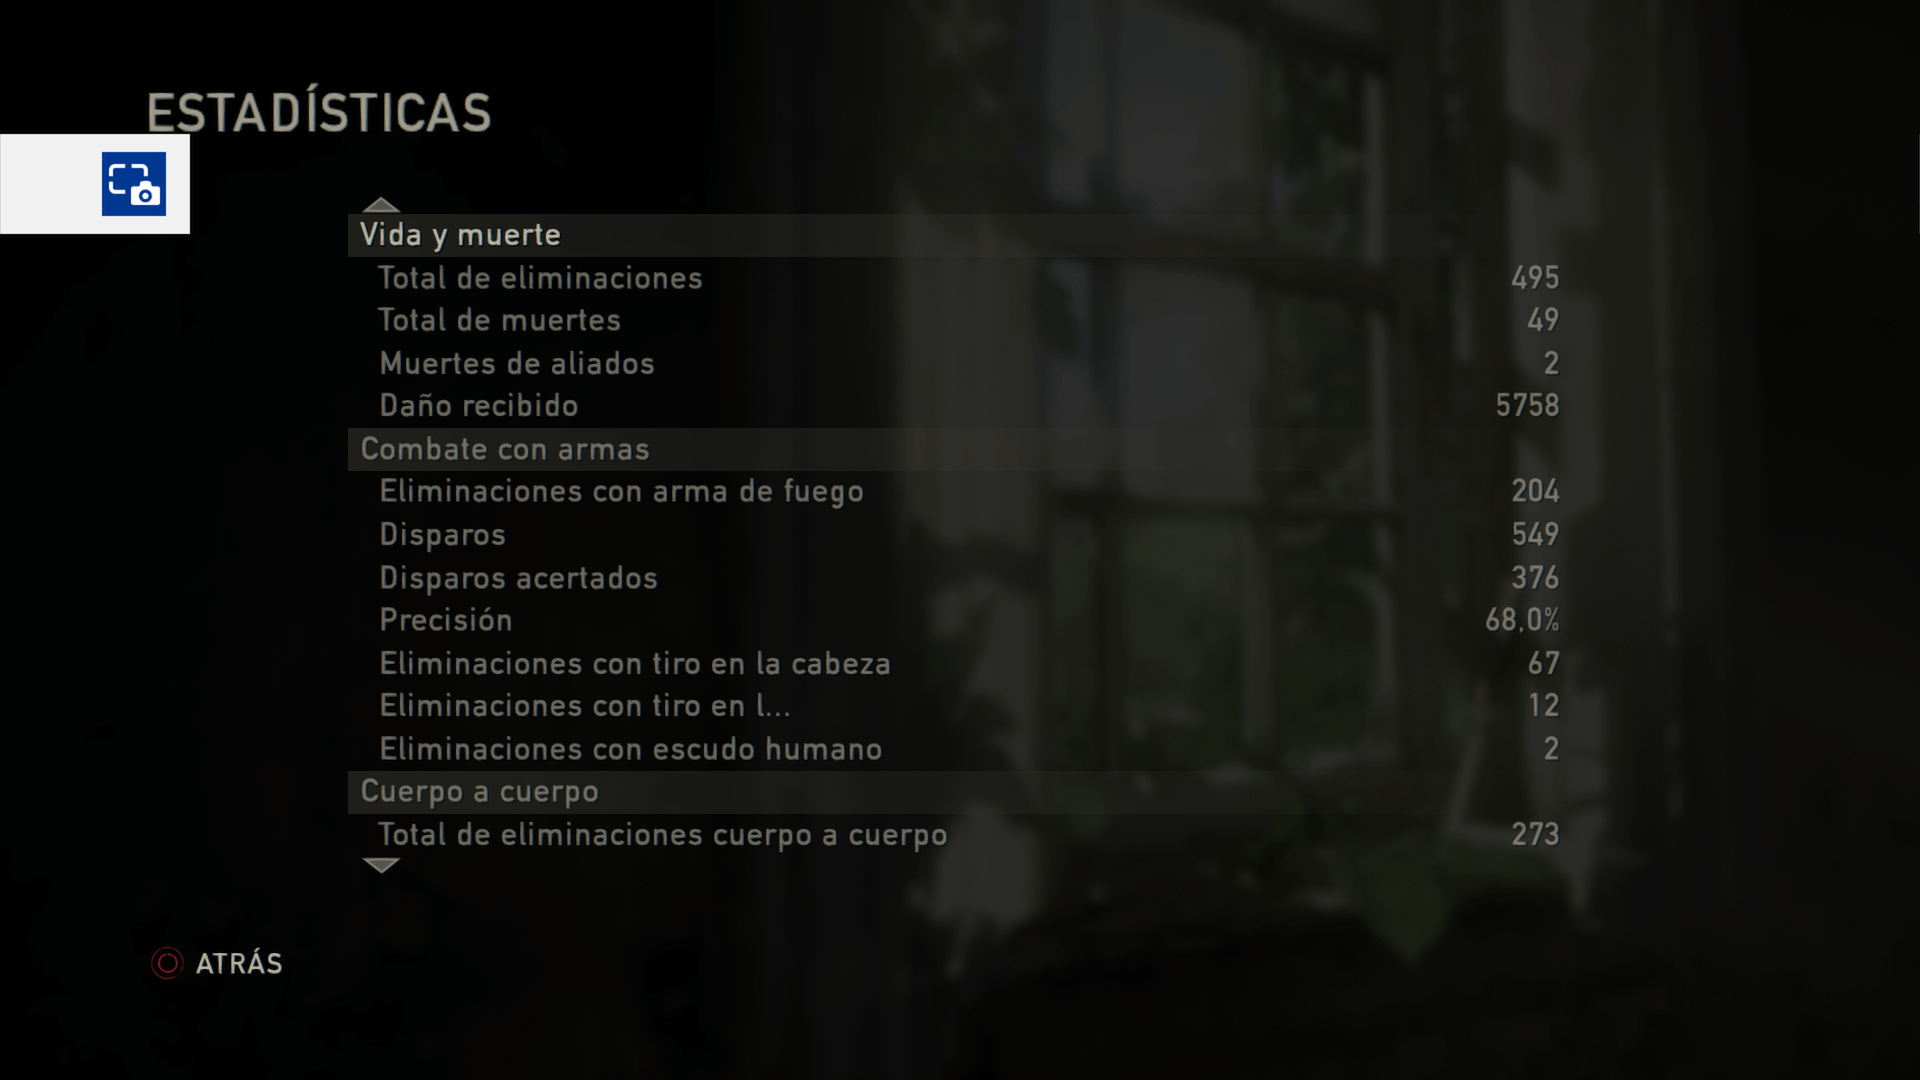 The Last of Us - Más estadísticas de juego